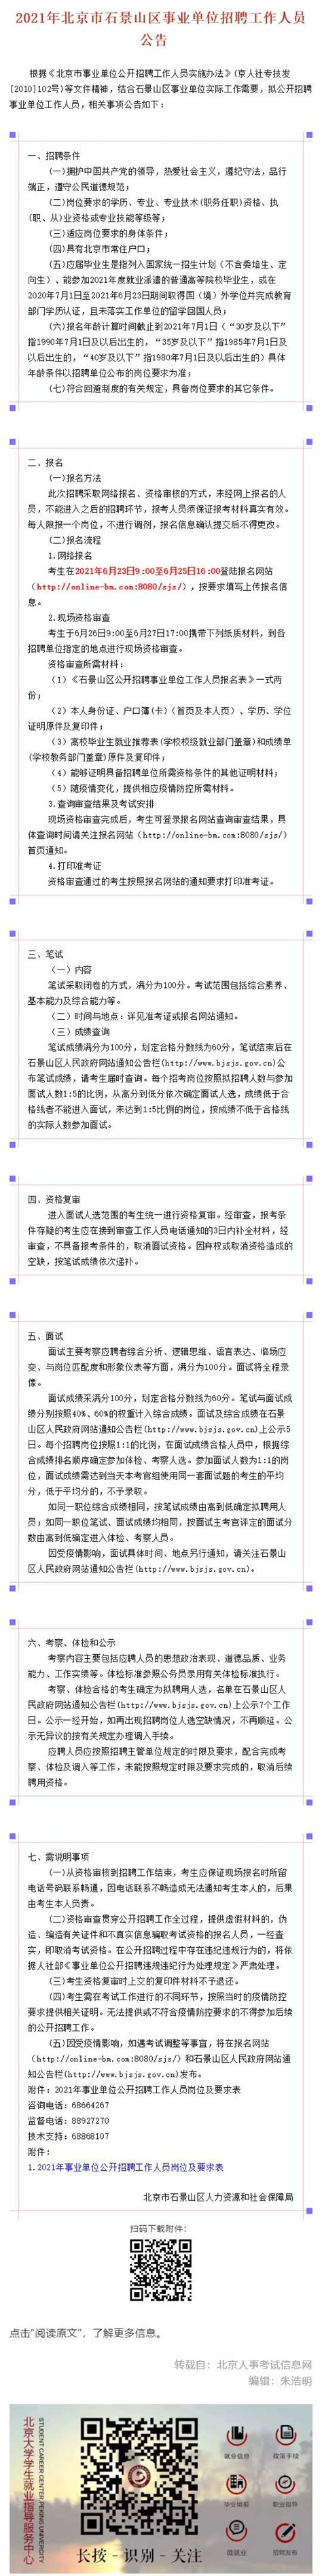 北京市石景山区事业单位招聘工作人员公告-北大光华管理学院职业发展中心